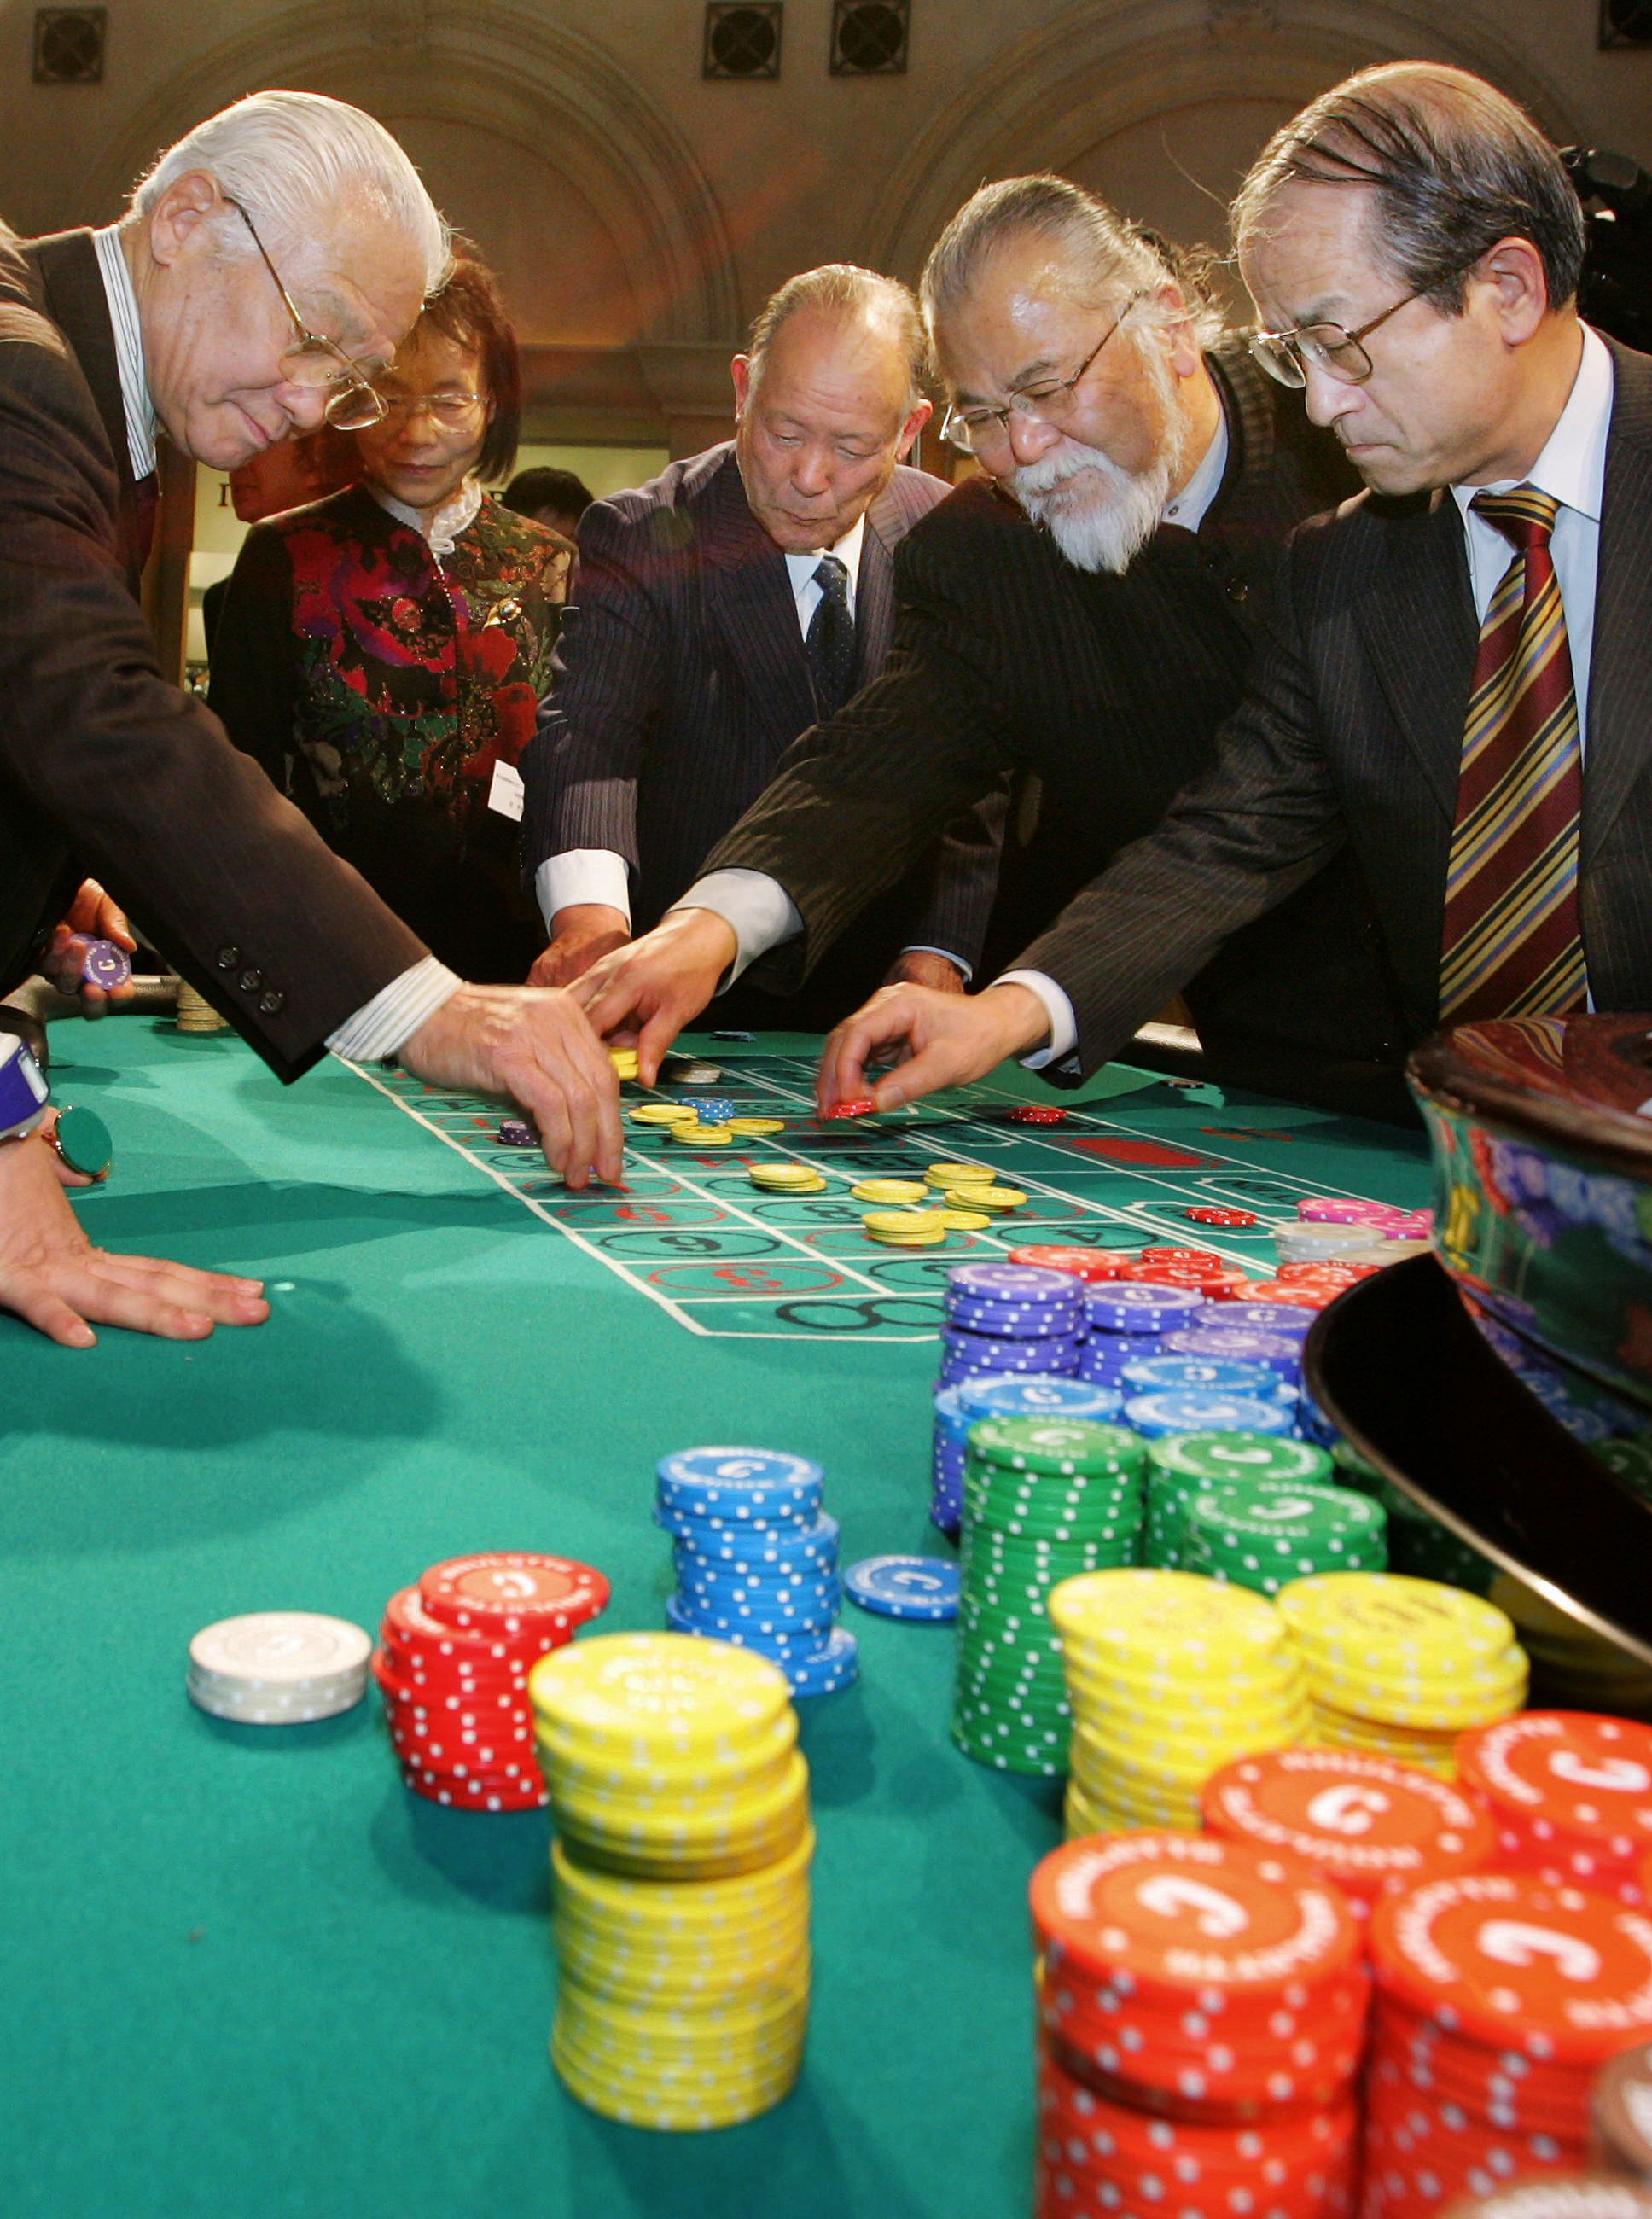 Japanese Casino